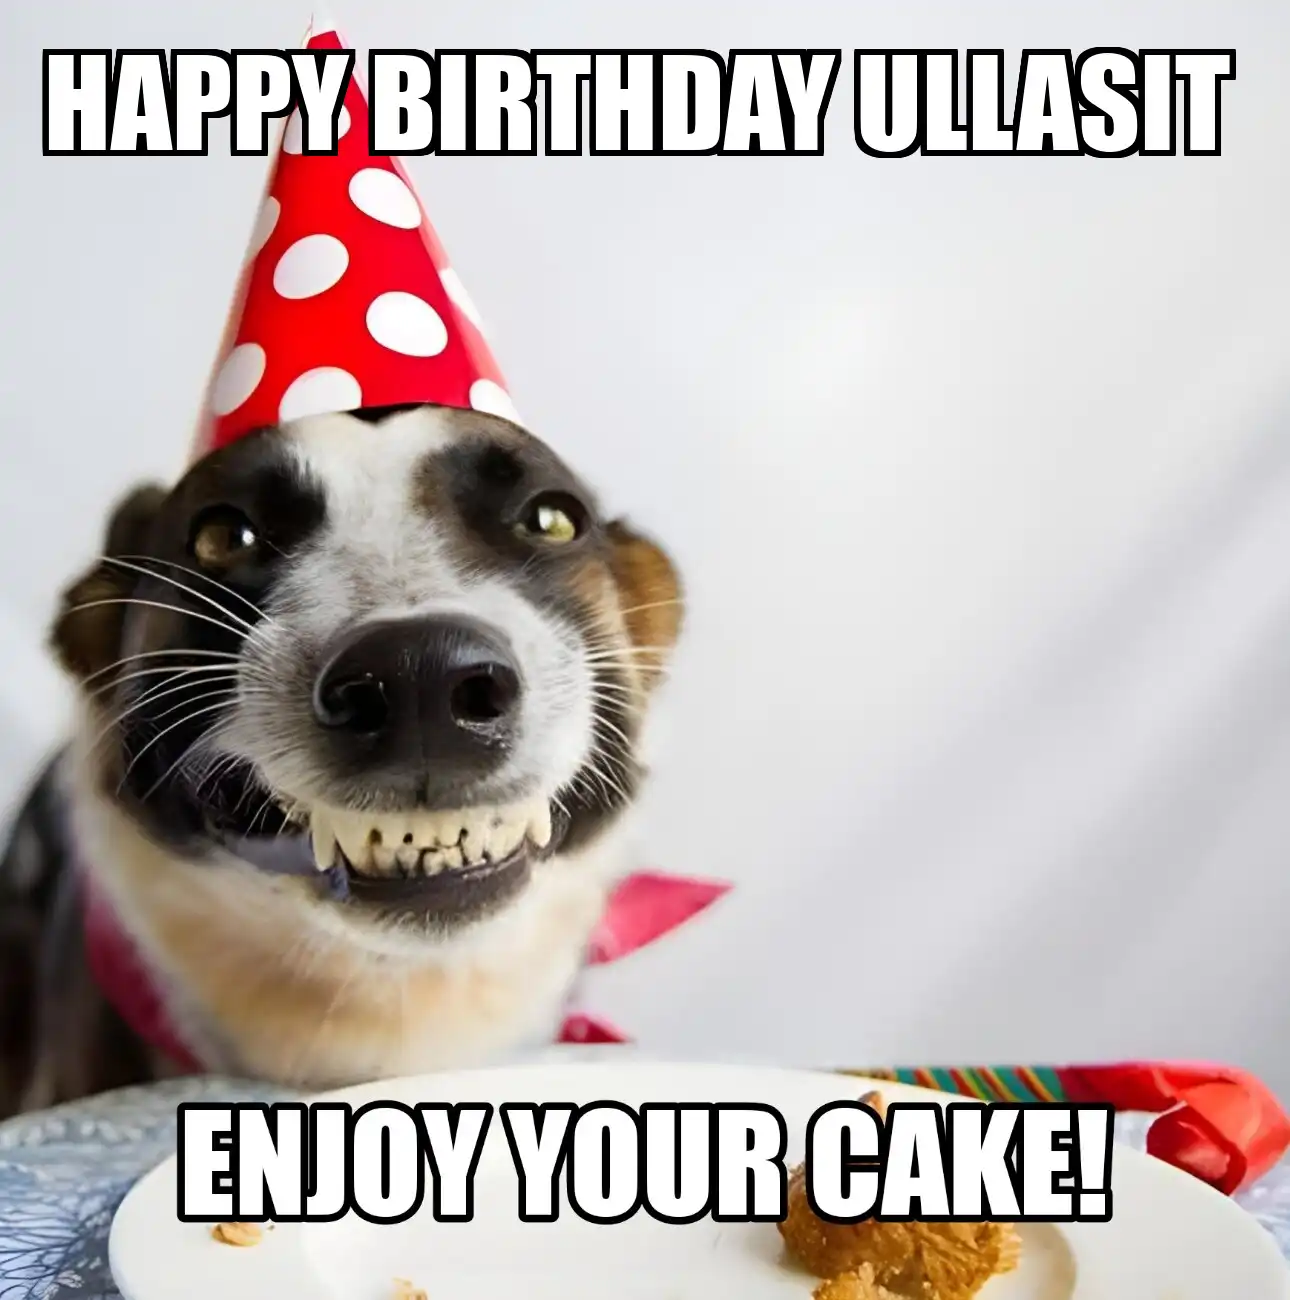 Happy Birthday Ullasit Enjoy Your Cake Dog Meme